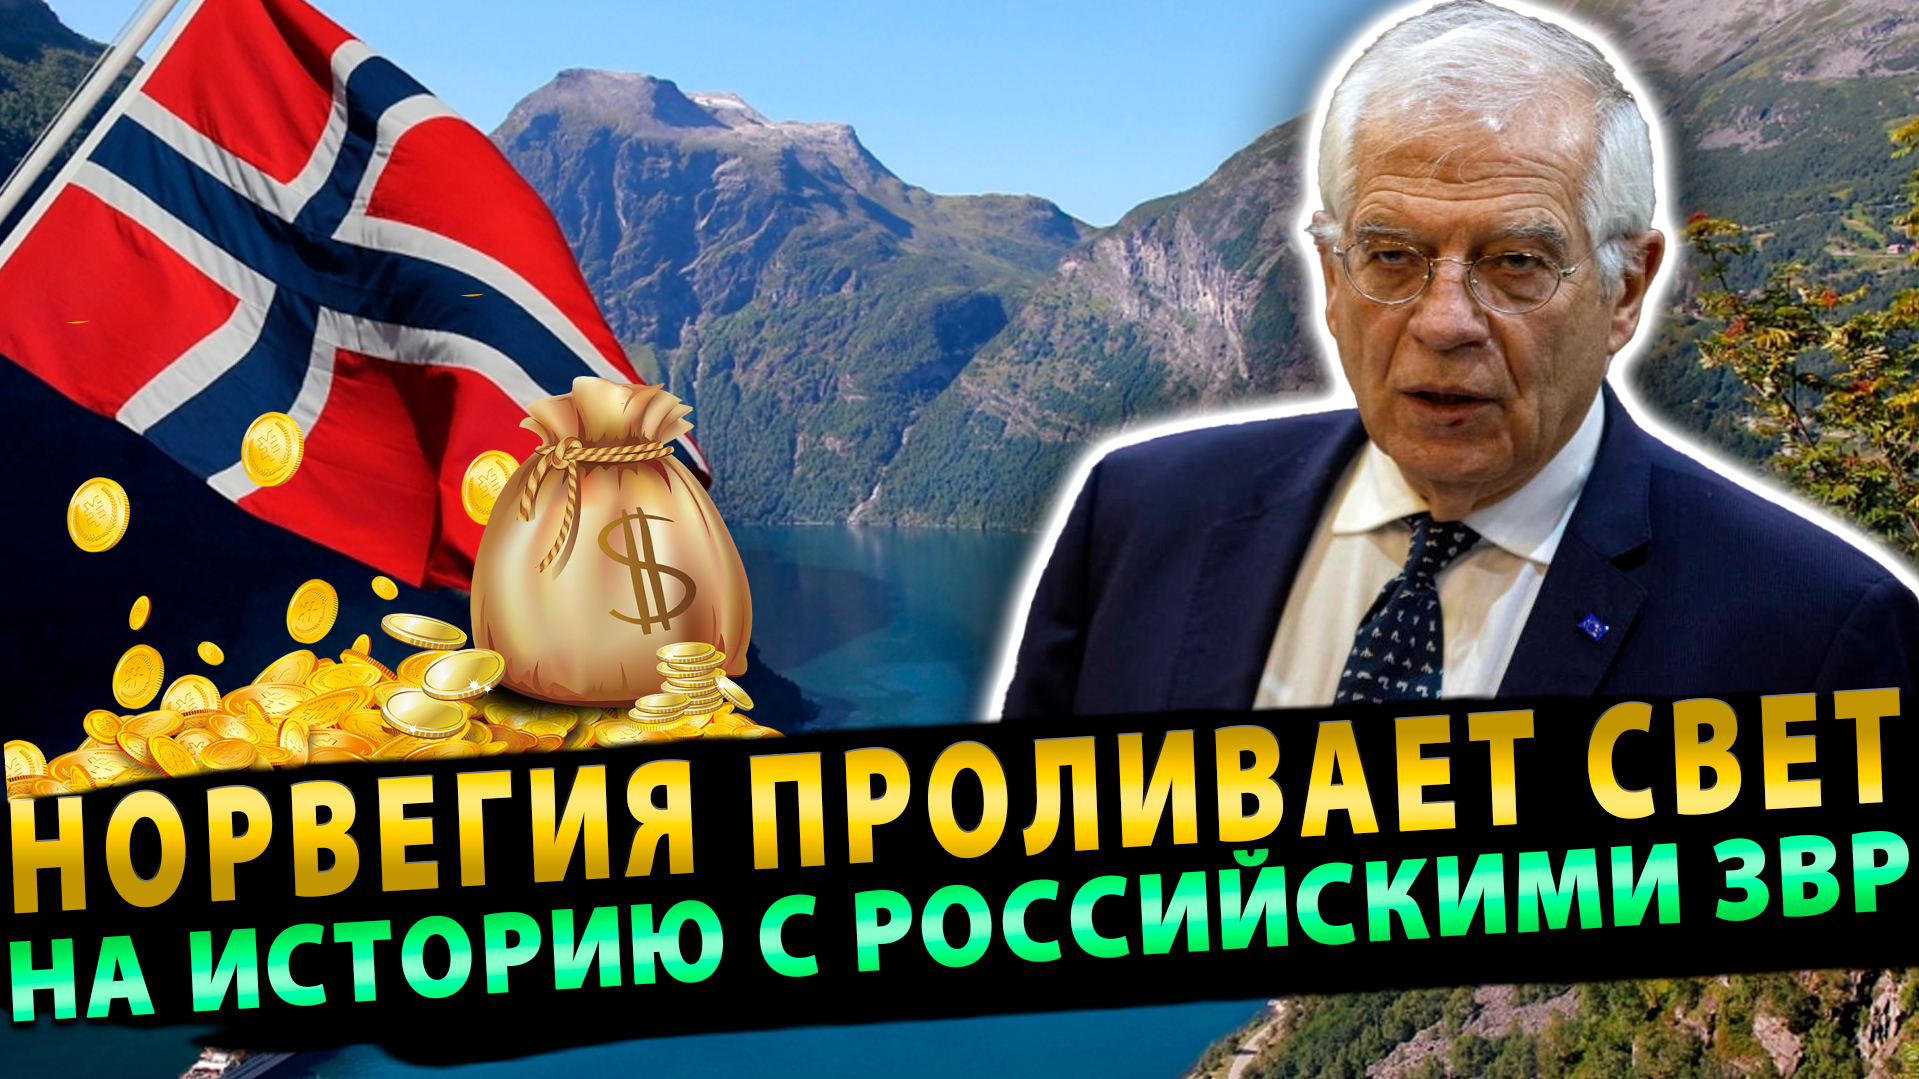 Норвегия проливает свет на историю с российскими активами